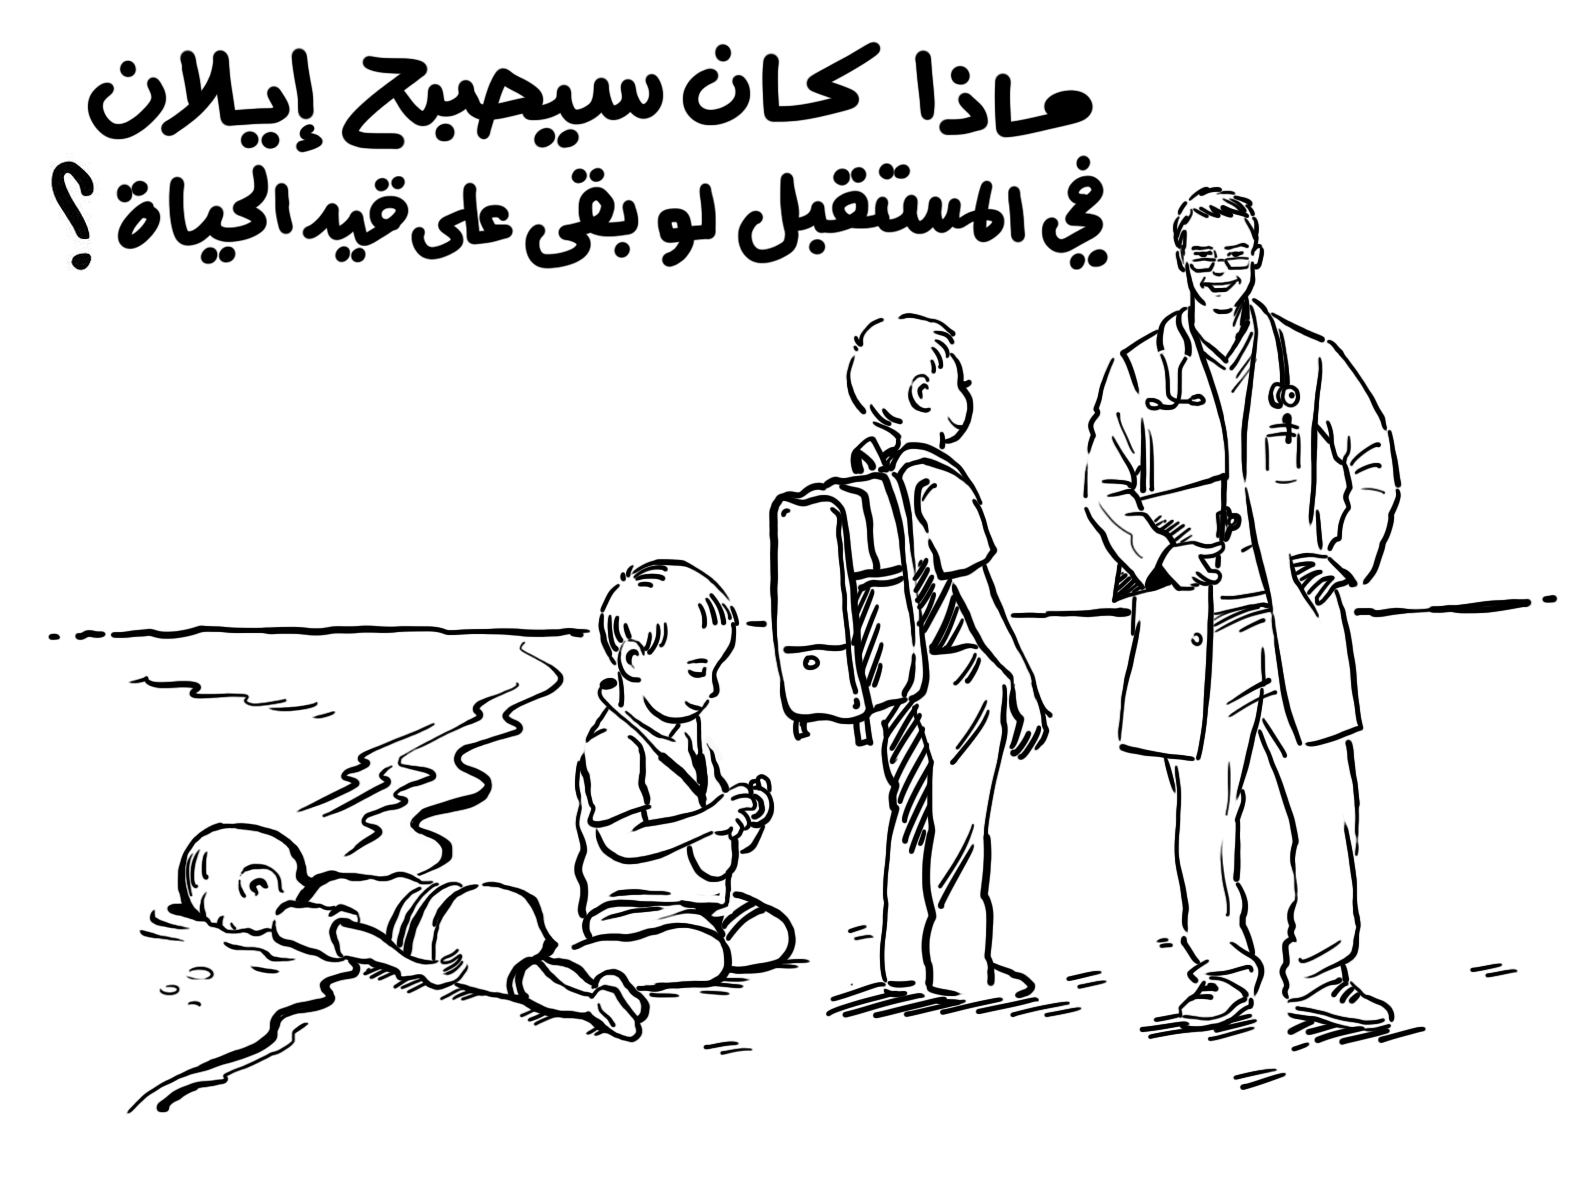 الملكة رانيا تنشر رسما كاريكاتيرا ردا على “شارلي إيبدو”